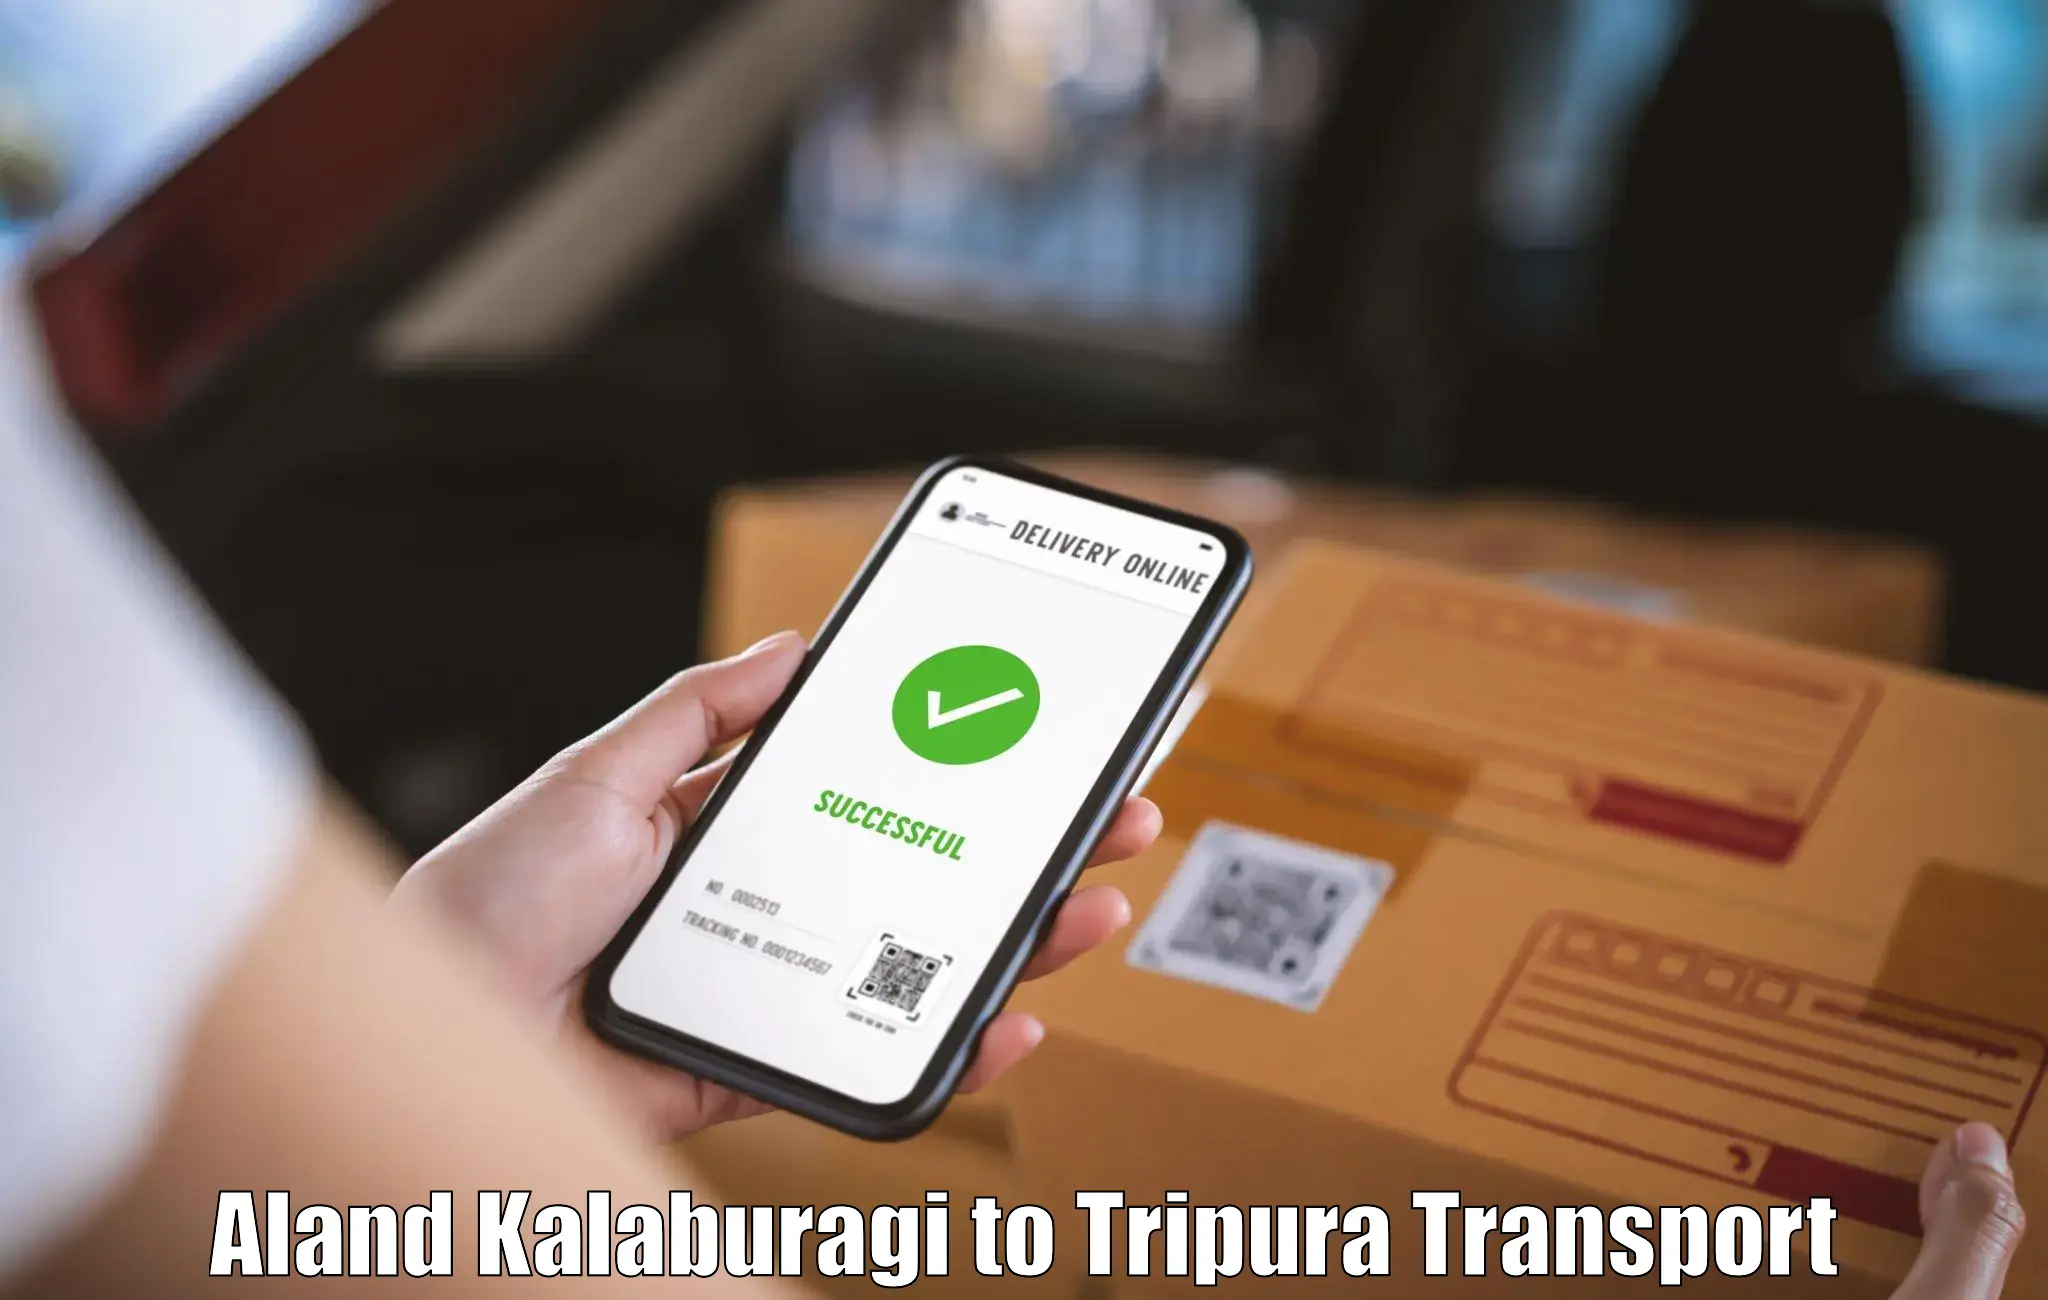 Transport in sharing Aland Kalaburagi to Dharmanagar